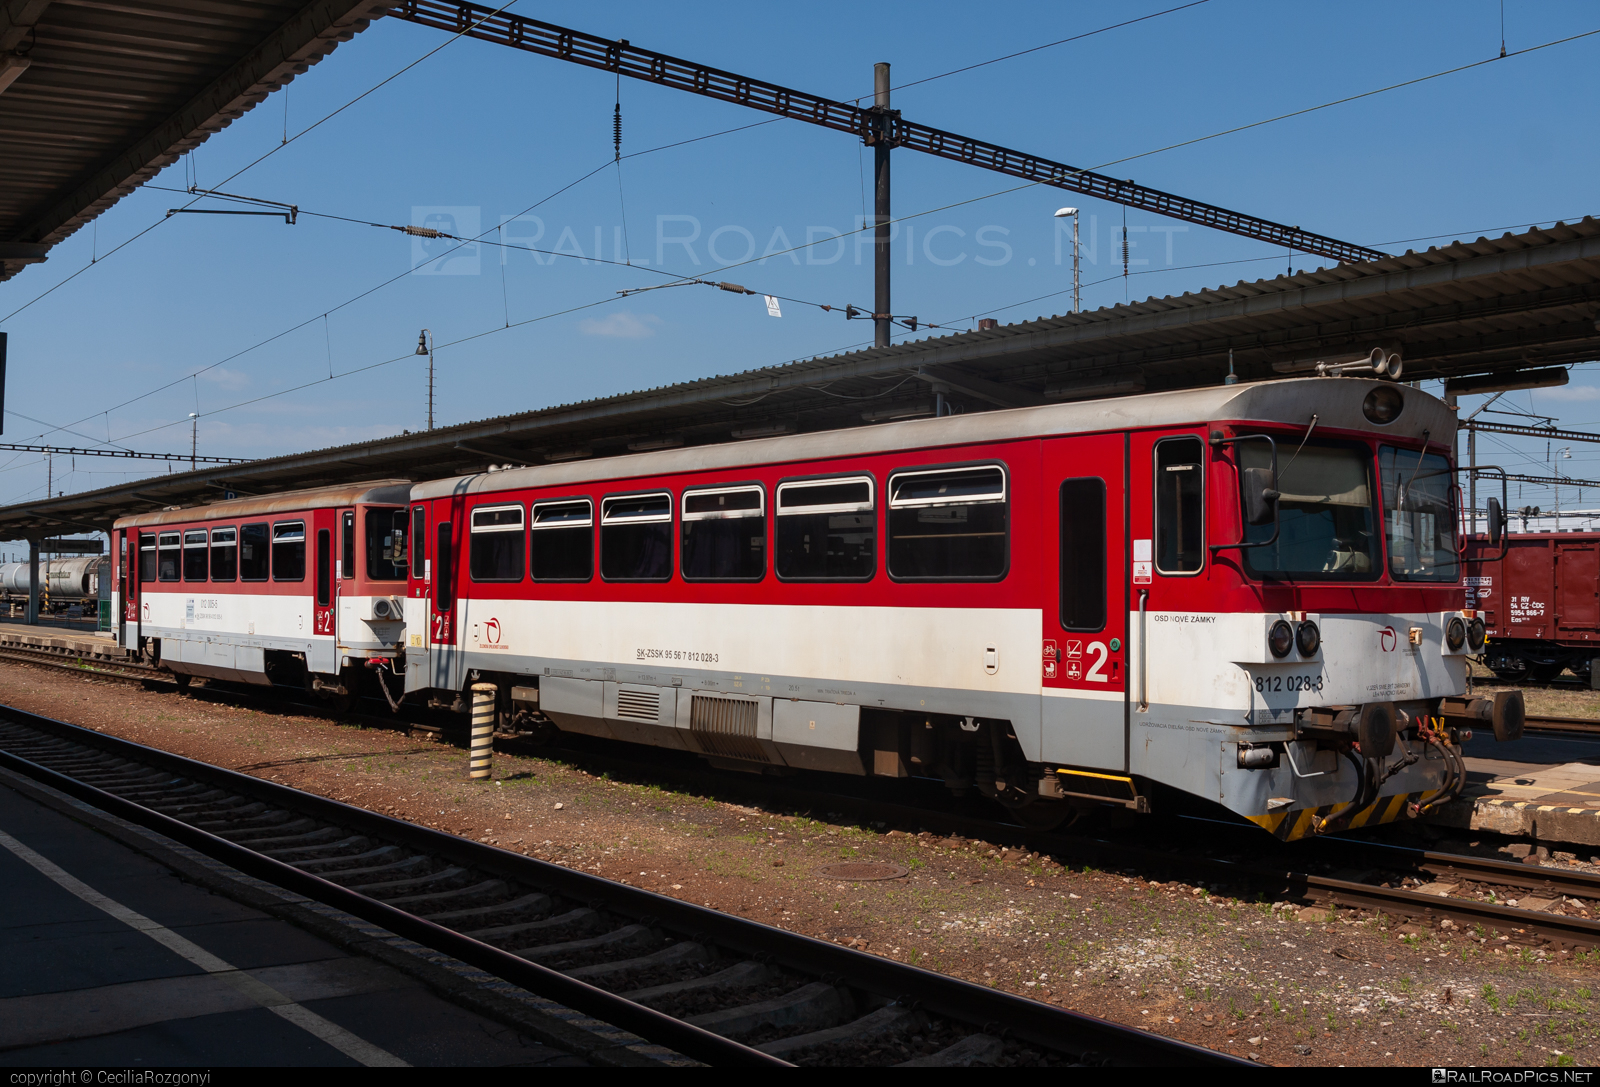 ŽOS Zvolen Class 812 - 812 028- 3 operated by Železničná Spoločnost' Slovensko, a.s. #ZeleznicnaSpolocnostSlovensko #zoszvolen #zoszvolen812 #zssk